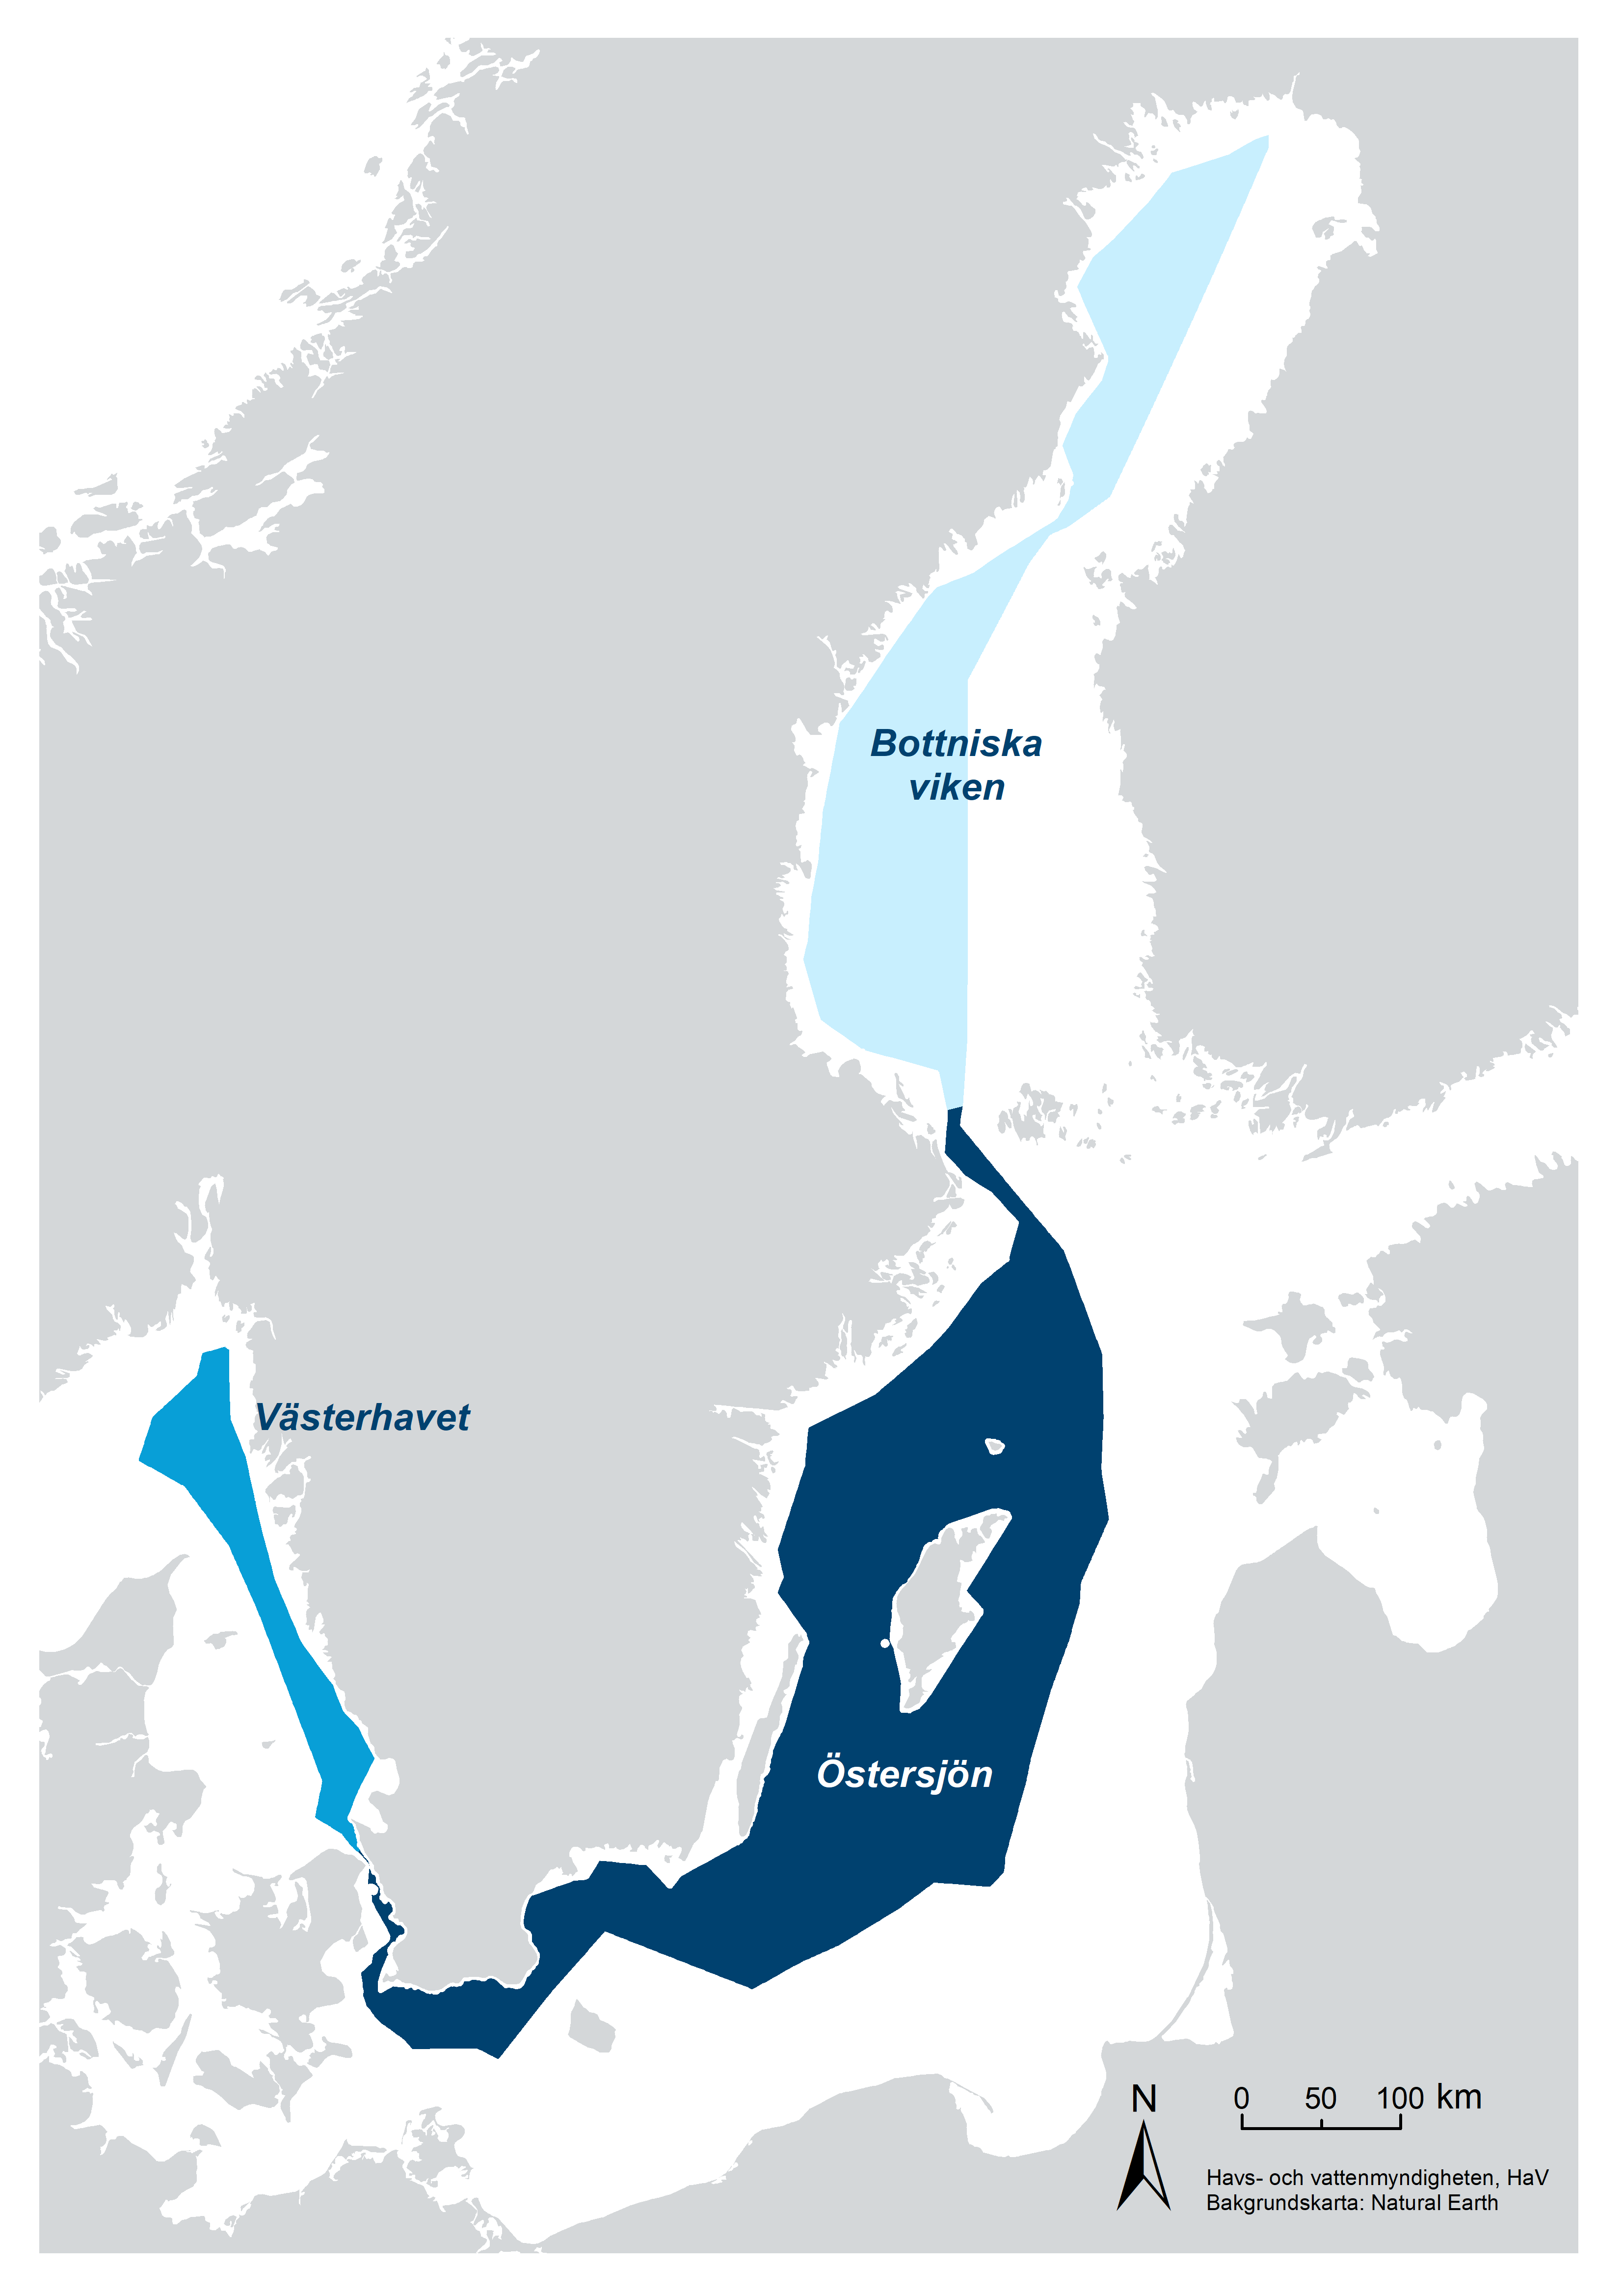 Karta över Sverige där de tre havsplanerområdena Bottniska viken, Östersjön och Västerhavet är markerade.